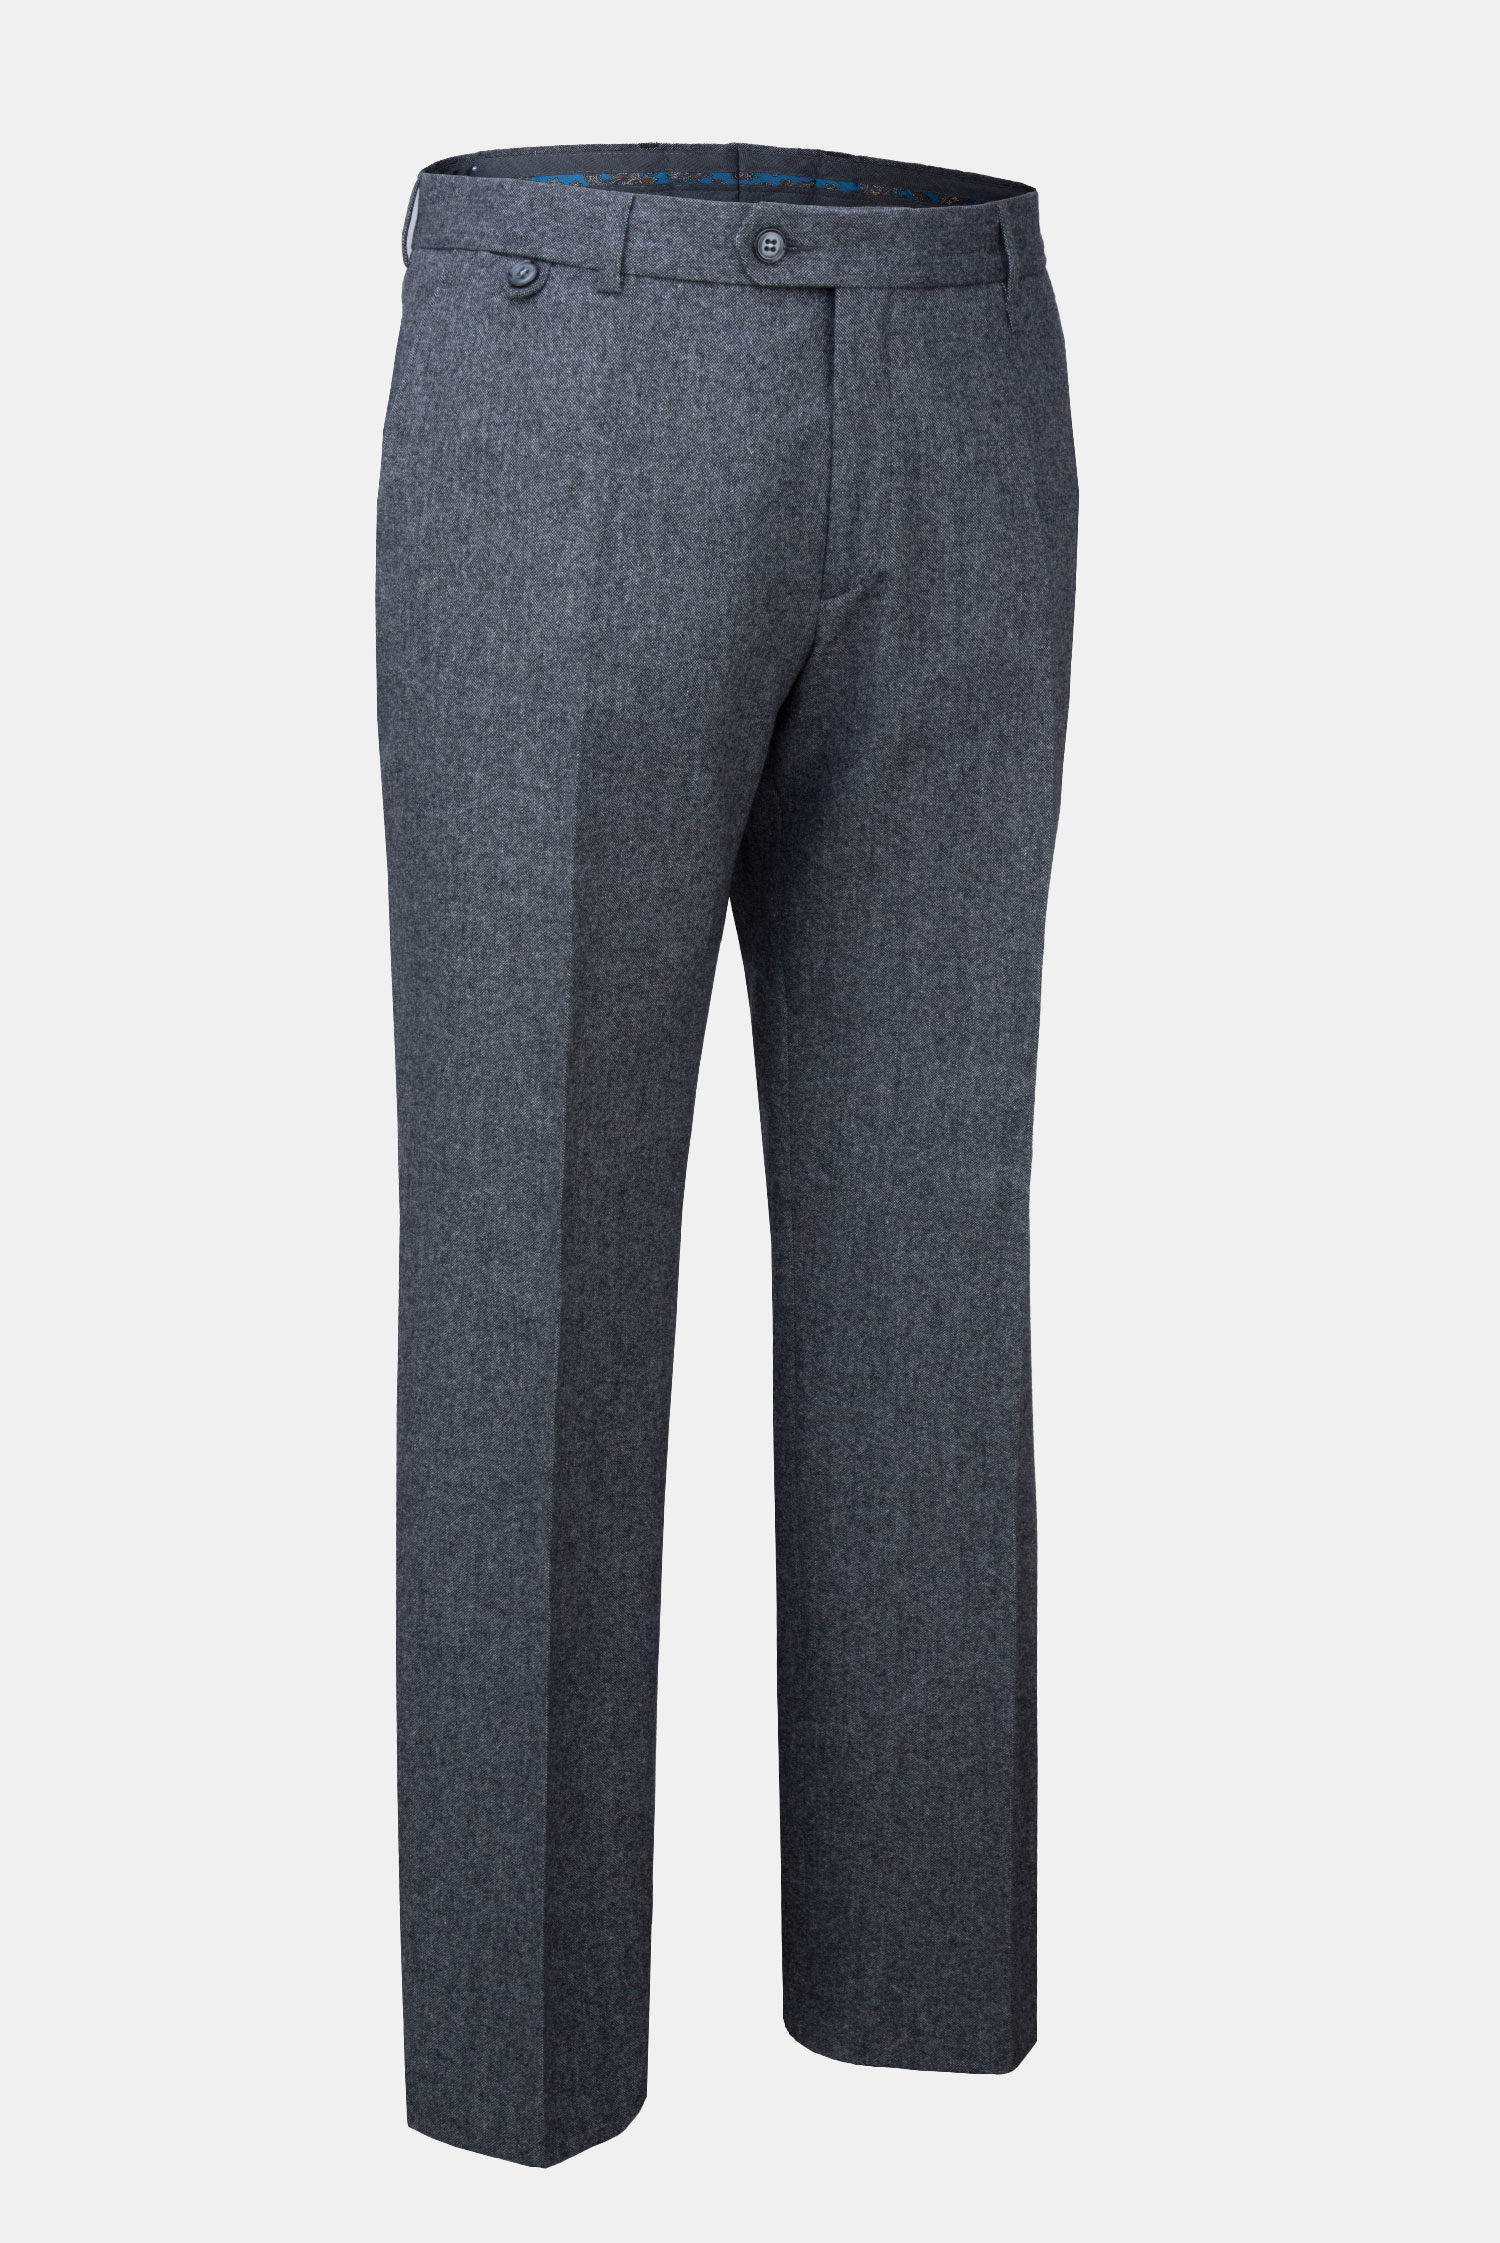 Серые фланелевые мужские брюки Travel Брюки м. 341 тк. СП20088 купить вМоскве на Павелецкой